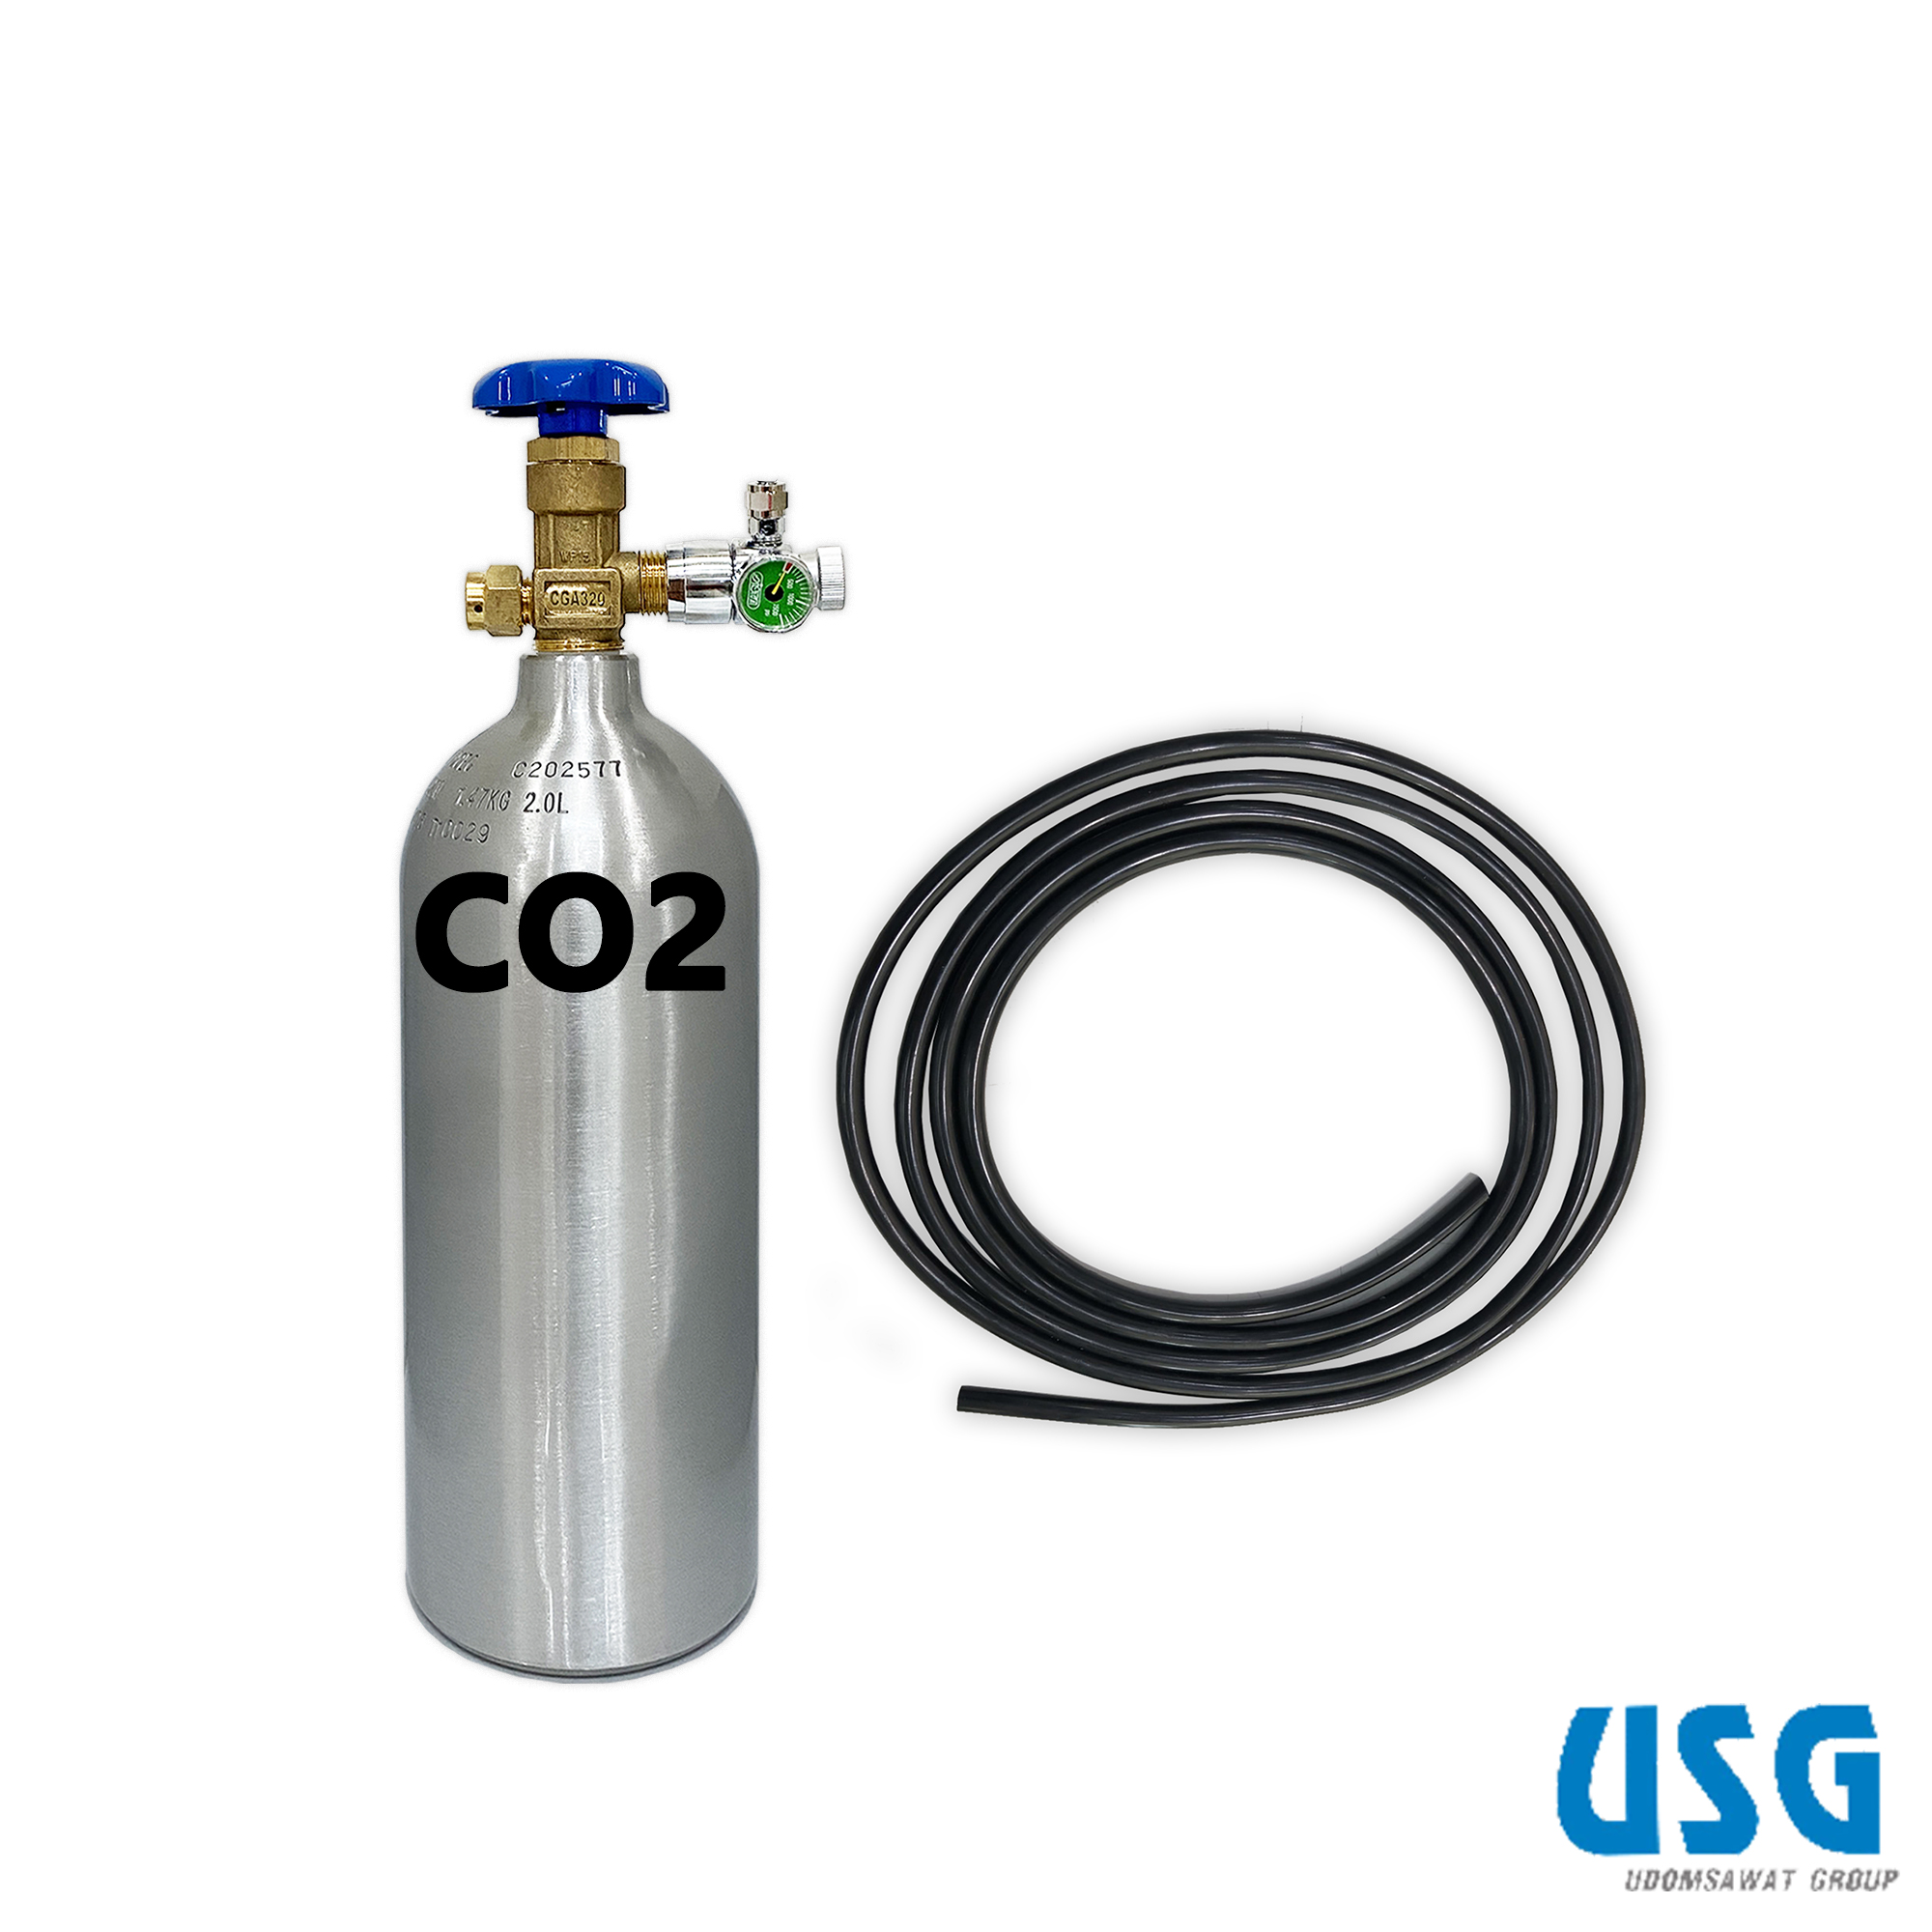 UMEGA ชุดถังอลูมิเนียม CO2 พร้อมเรกูเลเตอร์&สาย ขนาด 2 ลิตร DC-C20 (พร้อมแก๊ส, สำหรับต้นไม้น้ำ)